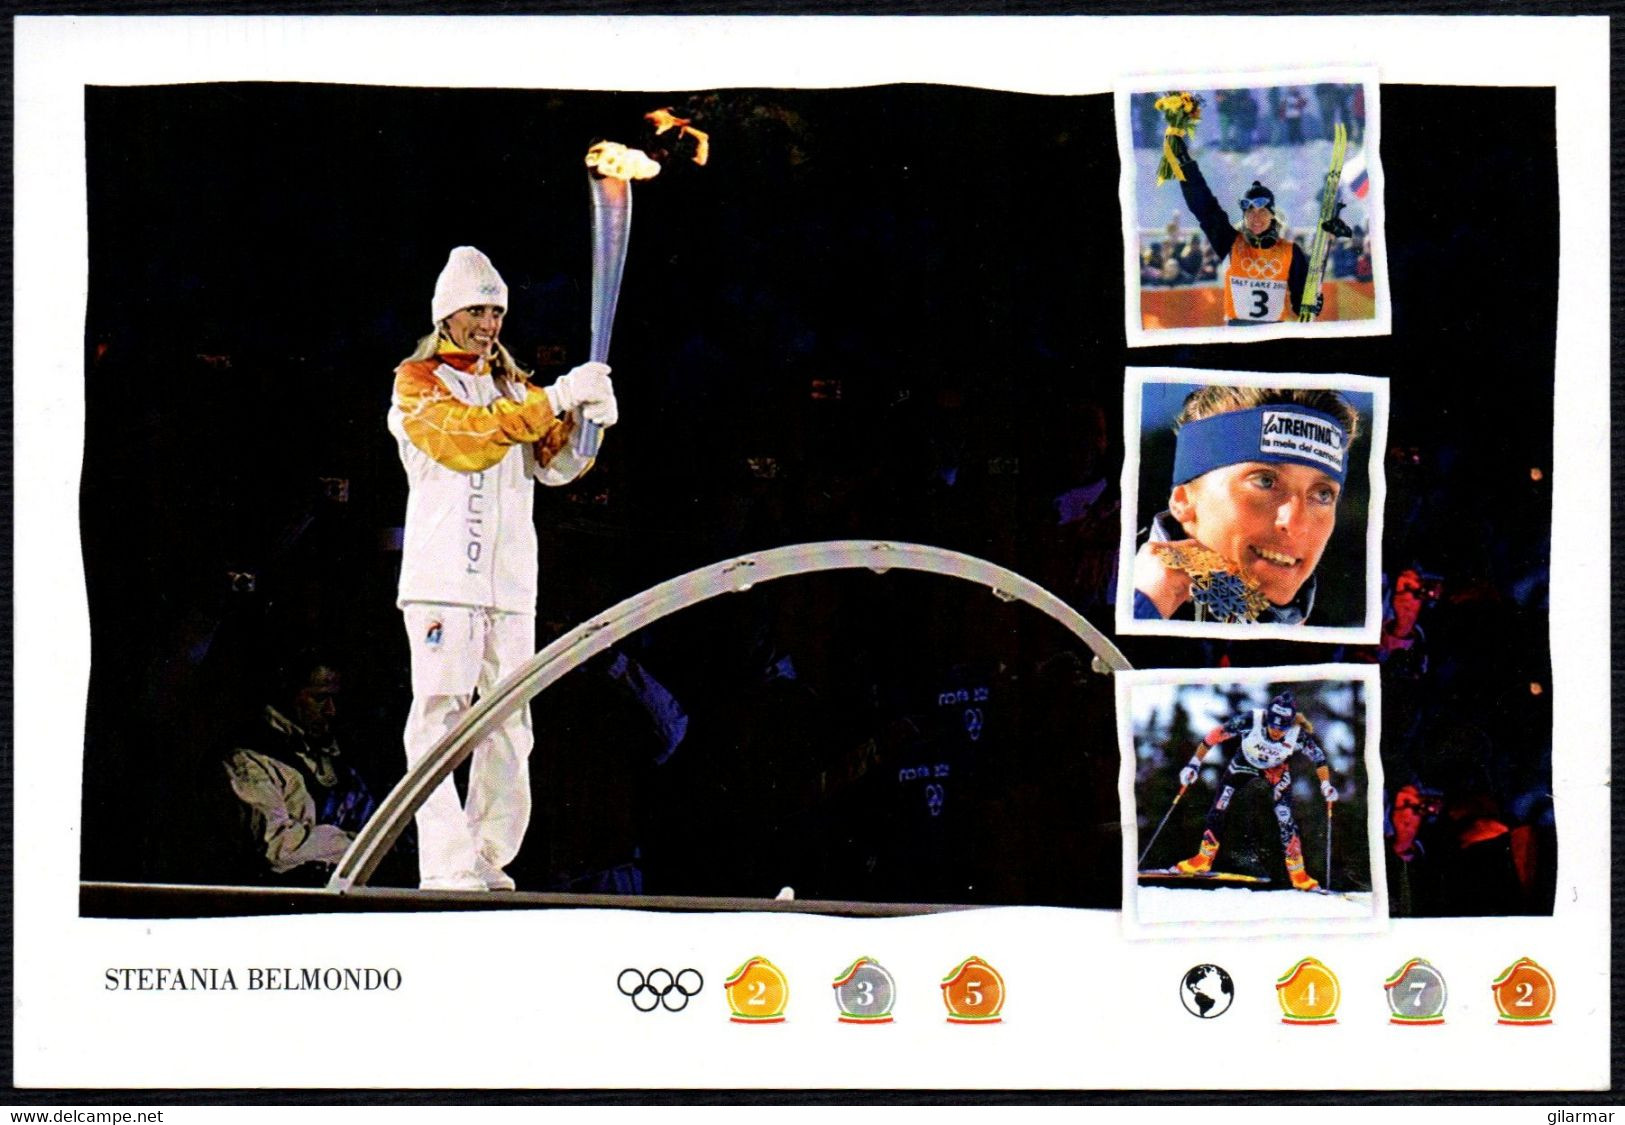 NORDIC SKIING / OLYMPIC WINNERS - ITALIA SALUZZO (CN) 2018 - ESPOSIZIONE LE OLIMPIADI - SCI DI FONDO: STEFANIA BELMONDO - Hiver 2002: Salt Lake City - Paralympic